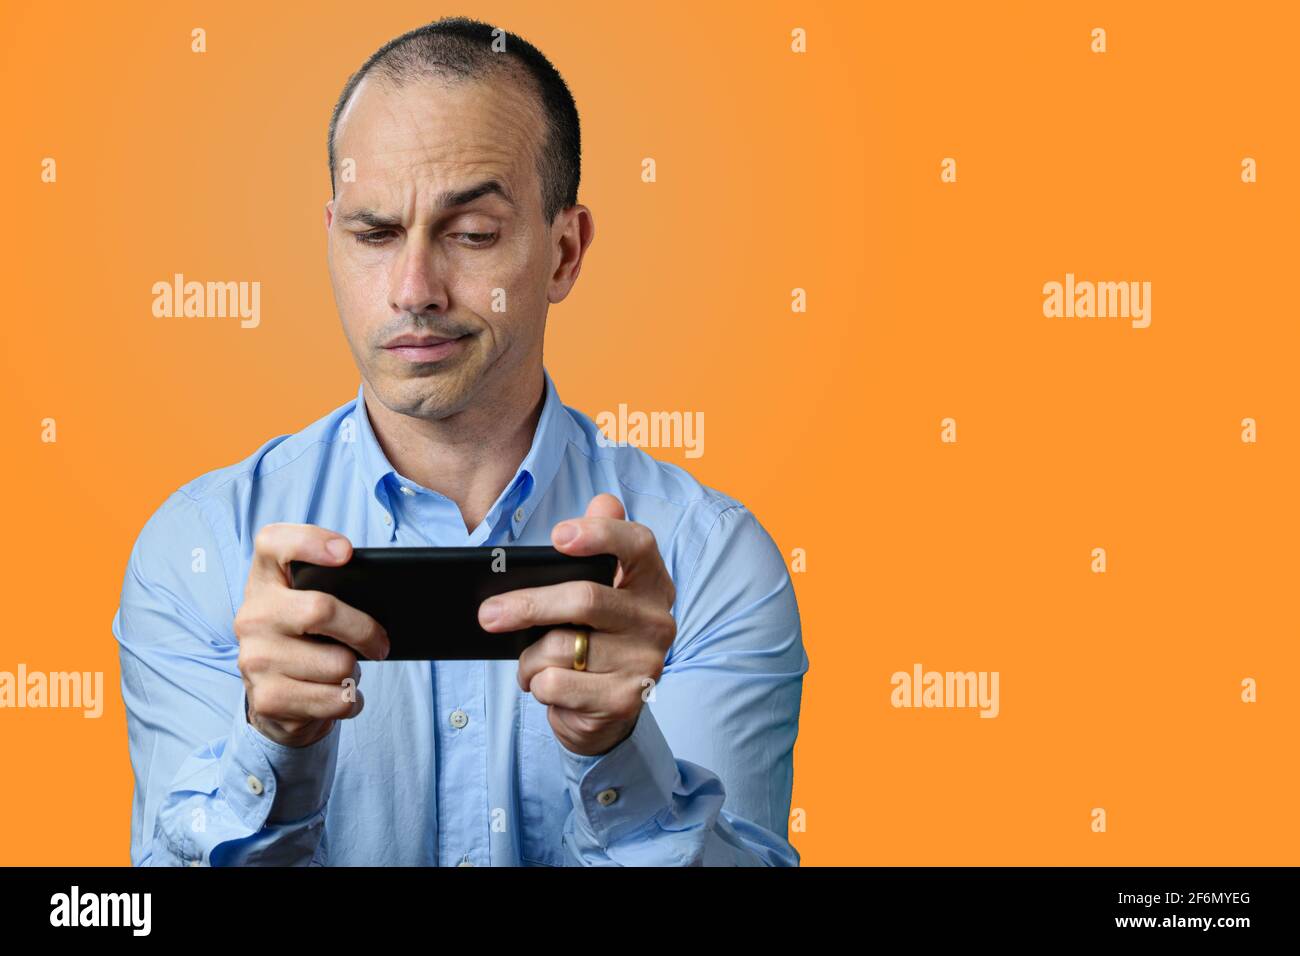 Hombre maduro con ropa formal, sospechoso y mirando a su smartphone. Fondo naranja. Foto de stock